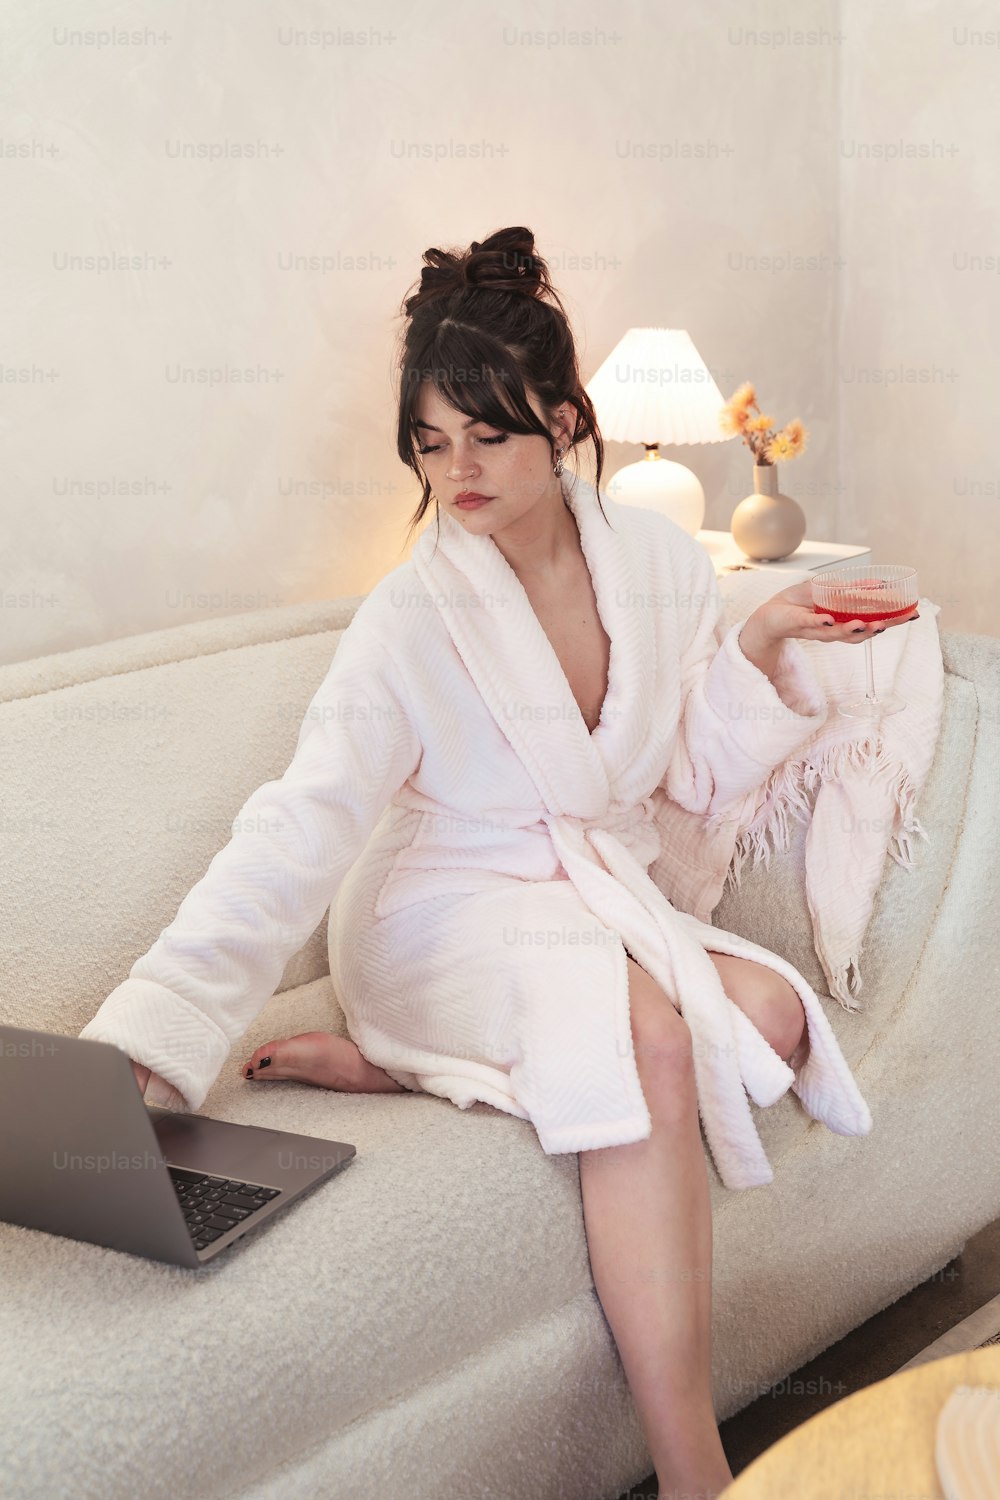 목욕 가운을 입은 여성이 노트북과 함께 소파에 앉아 있습니다.